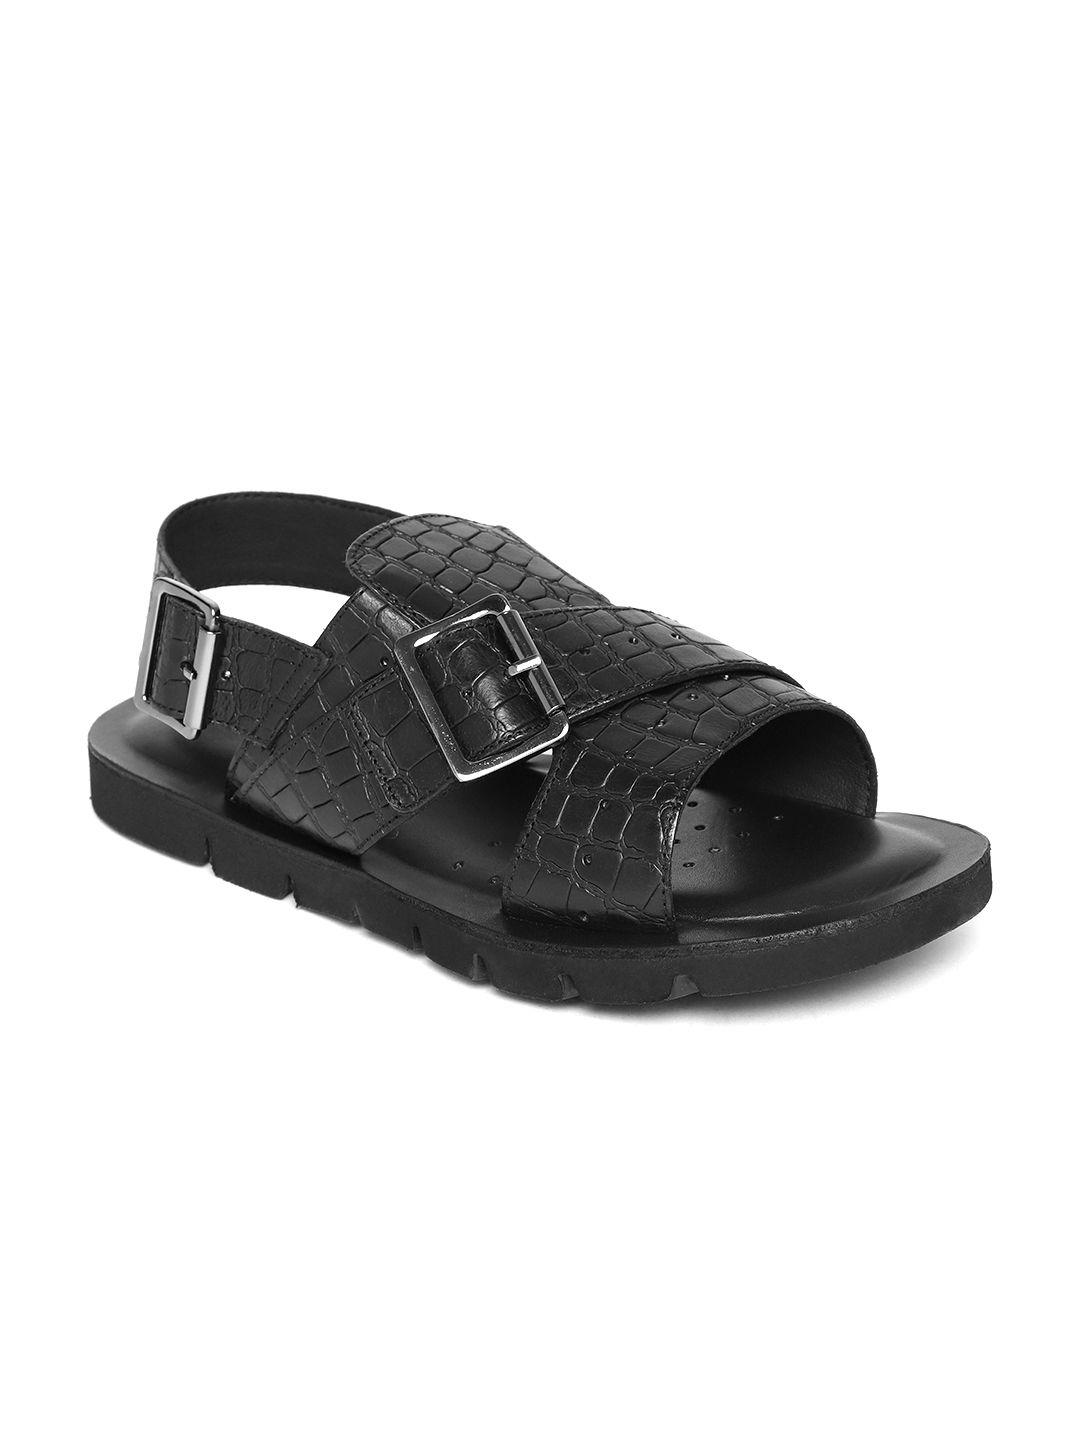 geox-men-black-textured-leather-comfort-sandals